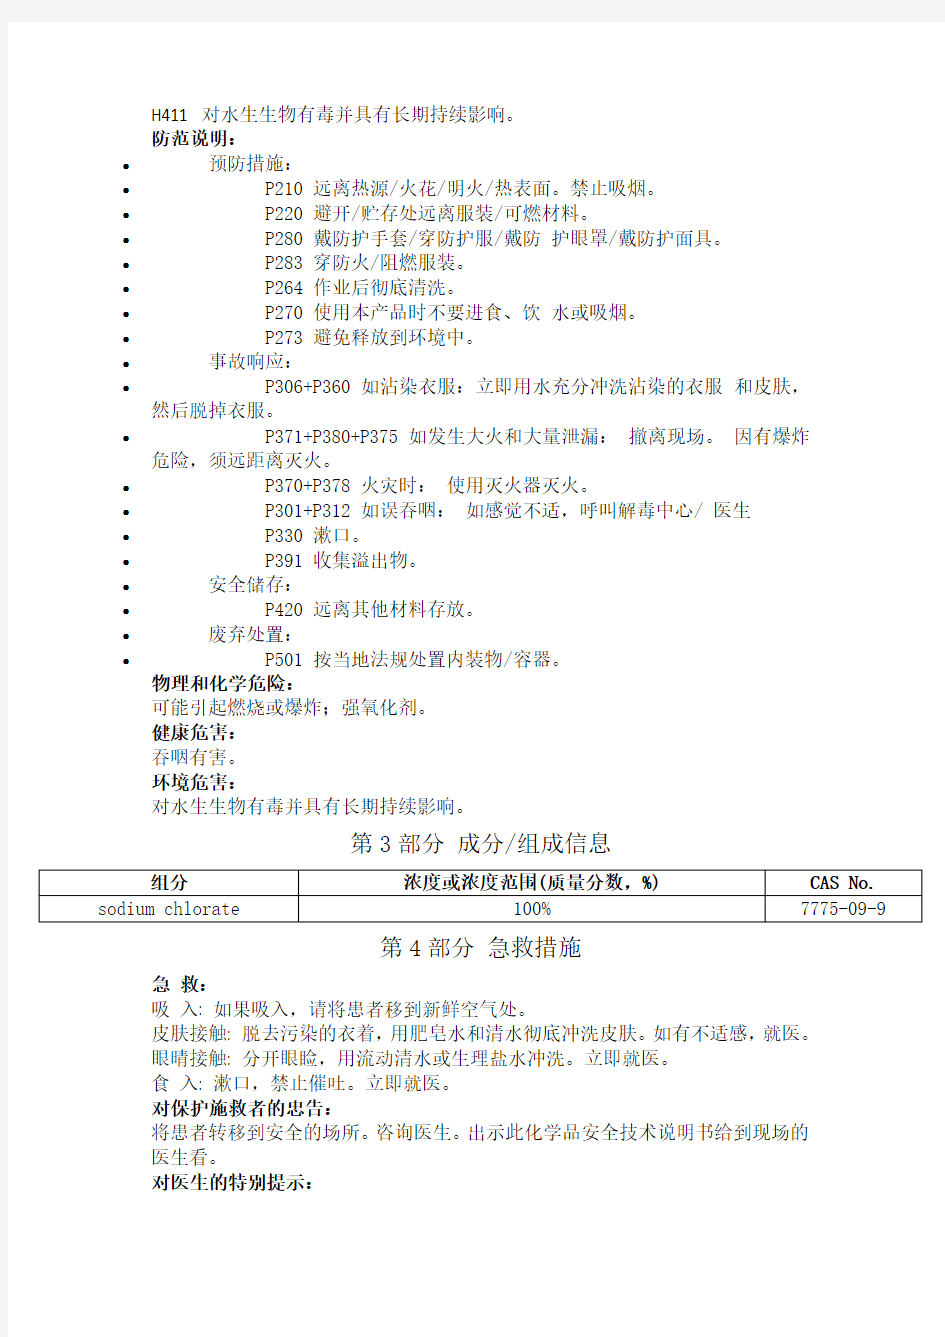 氯酸钠安全技术说明书中文